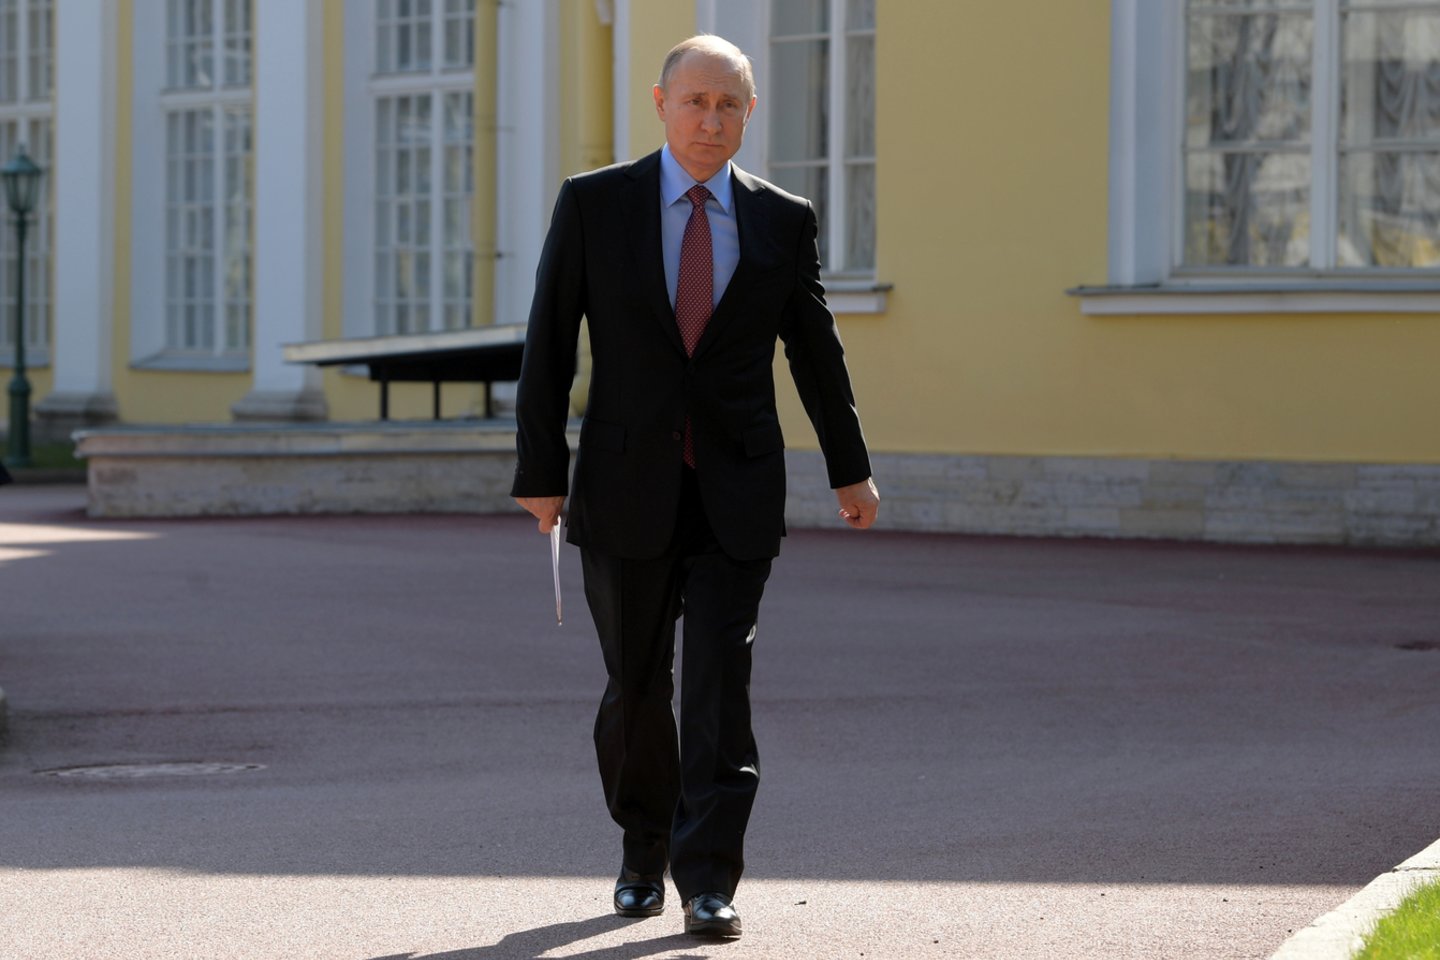  V.Putinas sulaukė kaltinimų savo sprendimais stabdant taikos procesą.<br> Reuters/Scanpix nuotr.